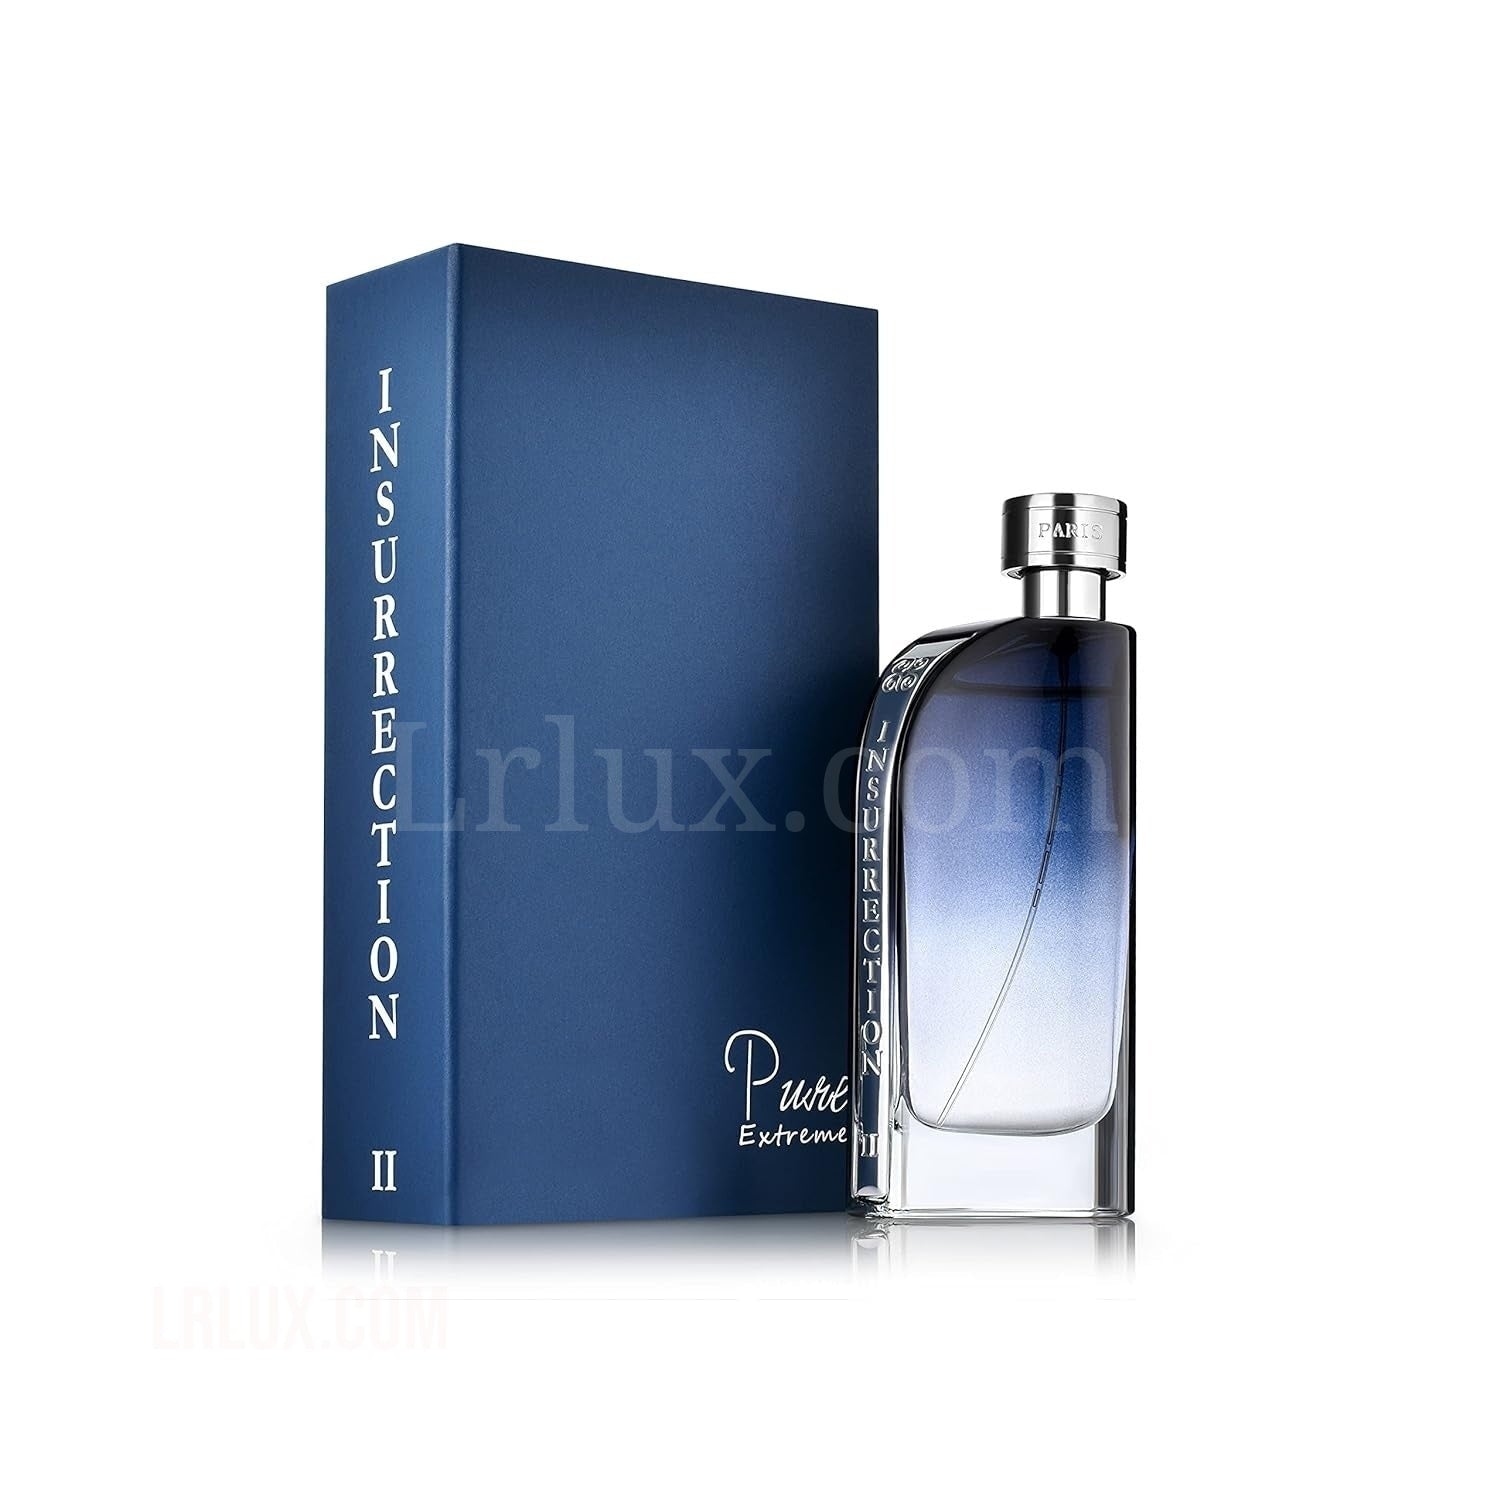 Reyane Tradition Insurrection II Pure Extreme Eau De Parfum